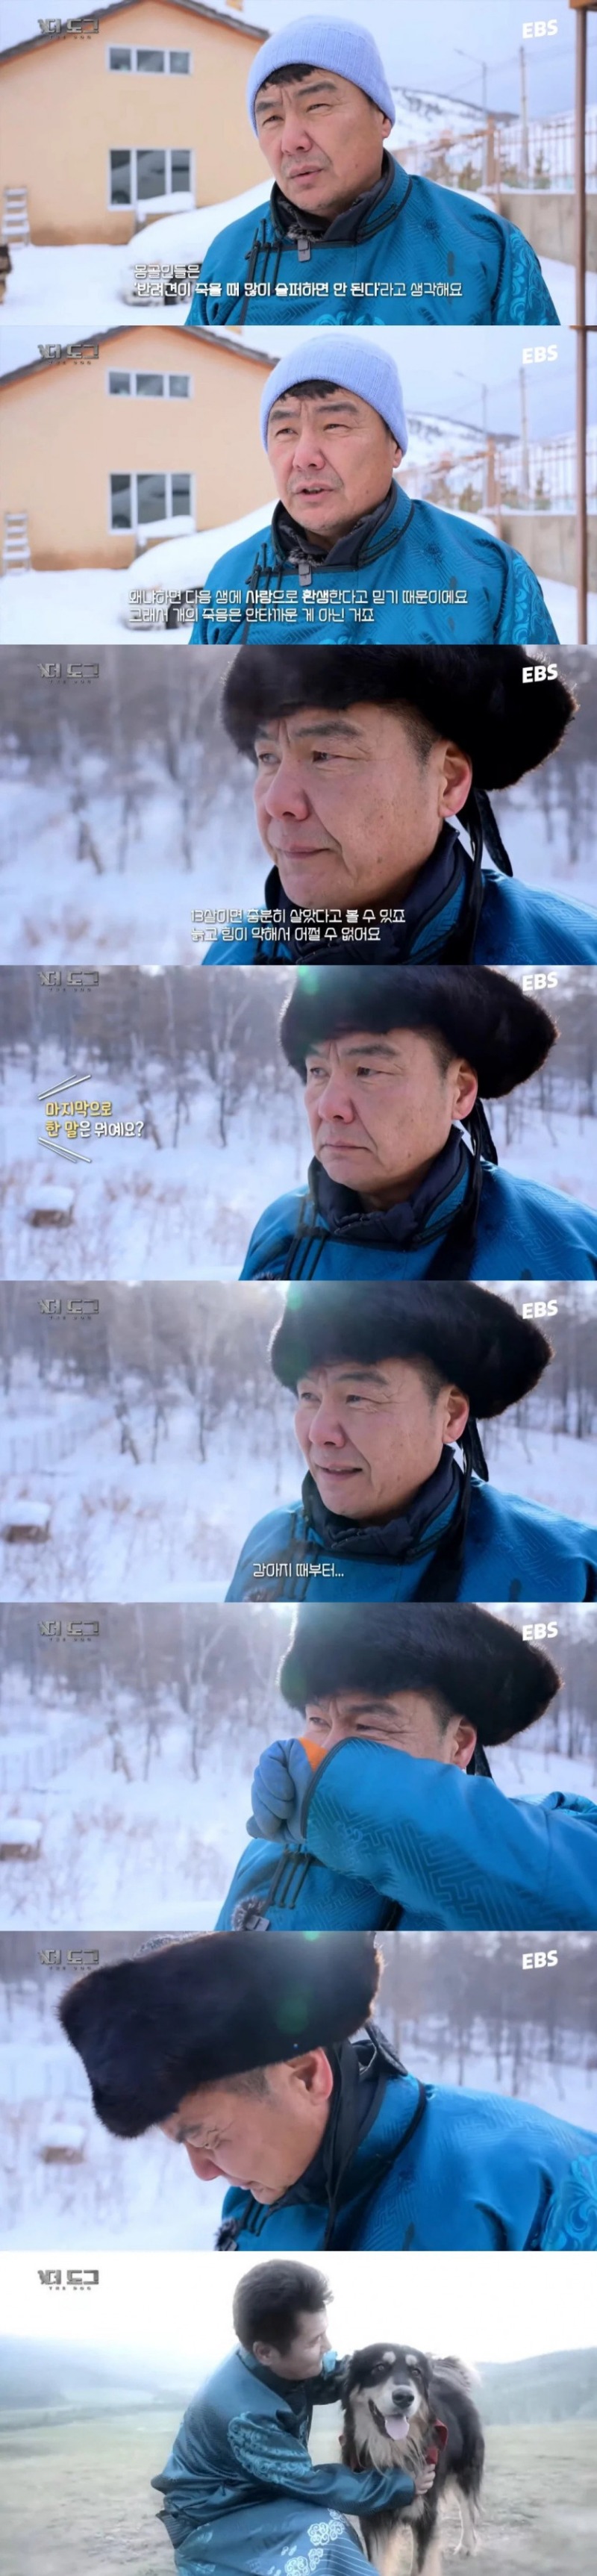 반려견 죽을때 많이 슬퍼하면 안된다고 생각한다는 몽골인들